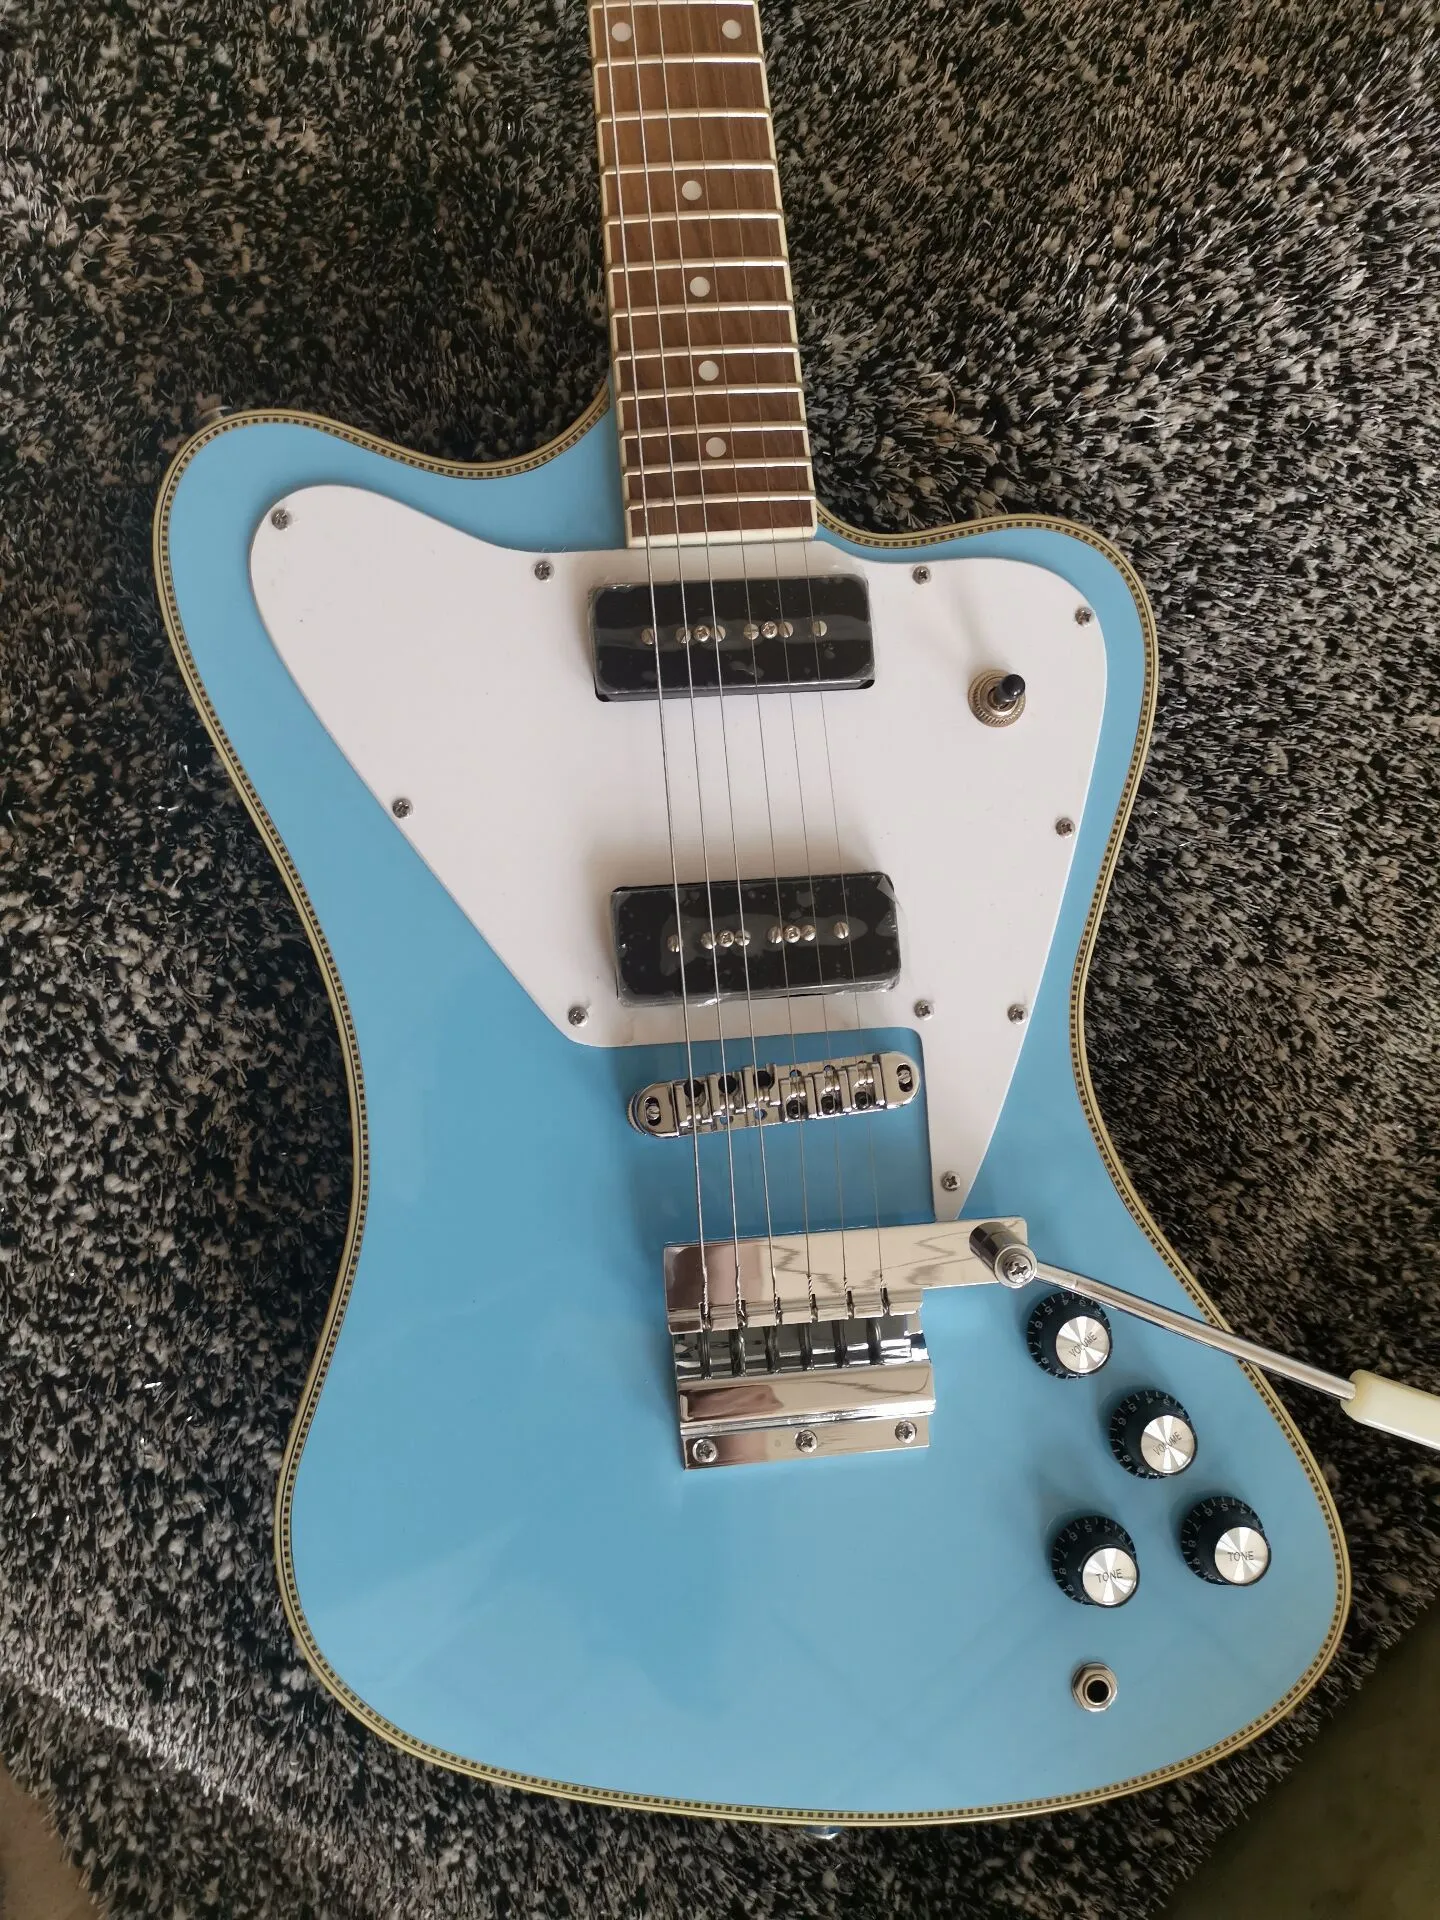 Rare guitare électrique bleu clair non inversé, version longue, pont Maestro Vibrola Tremolo, reliure en damier, accordeurs vintage, micro P90 noir